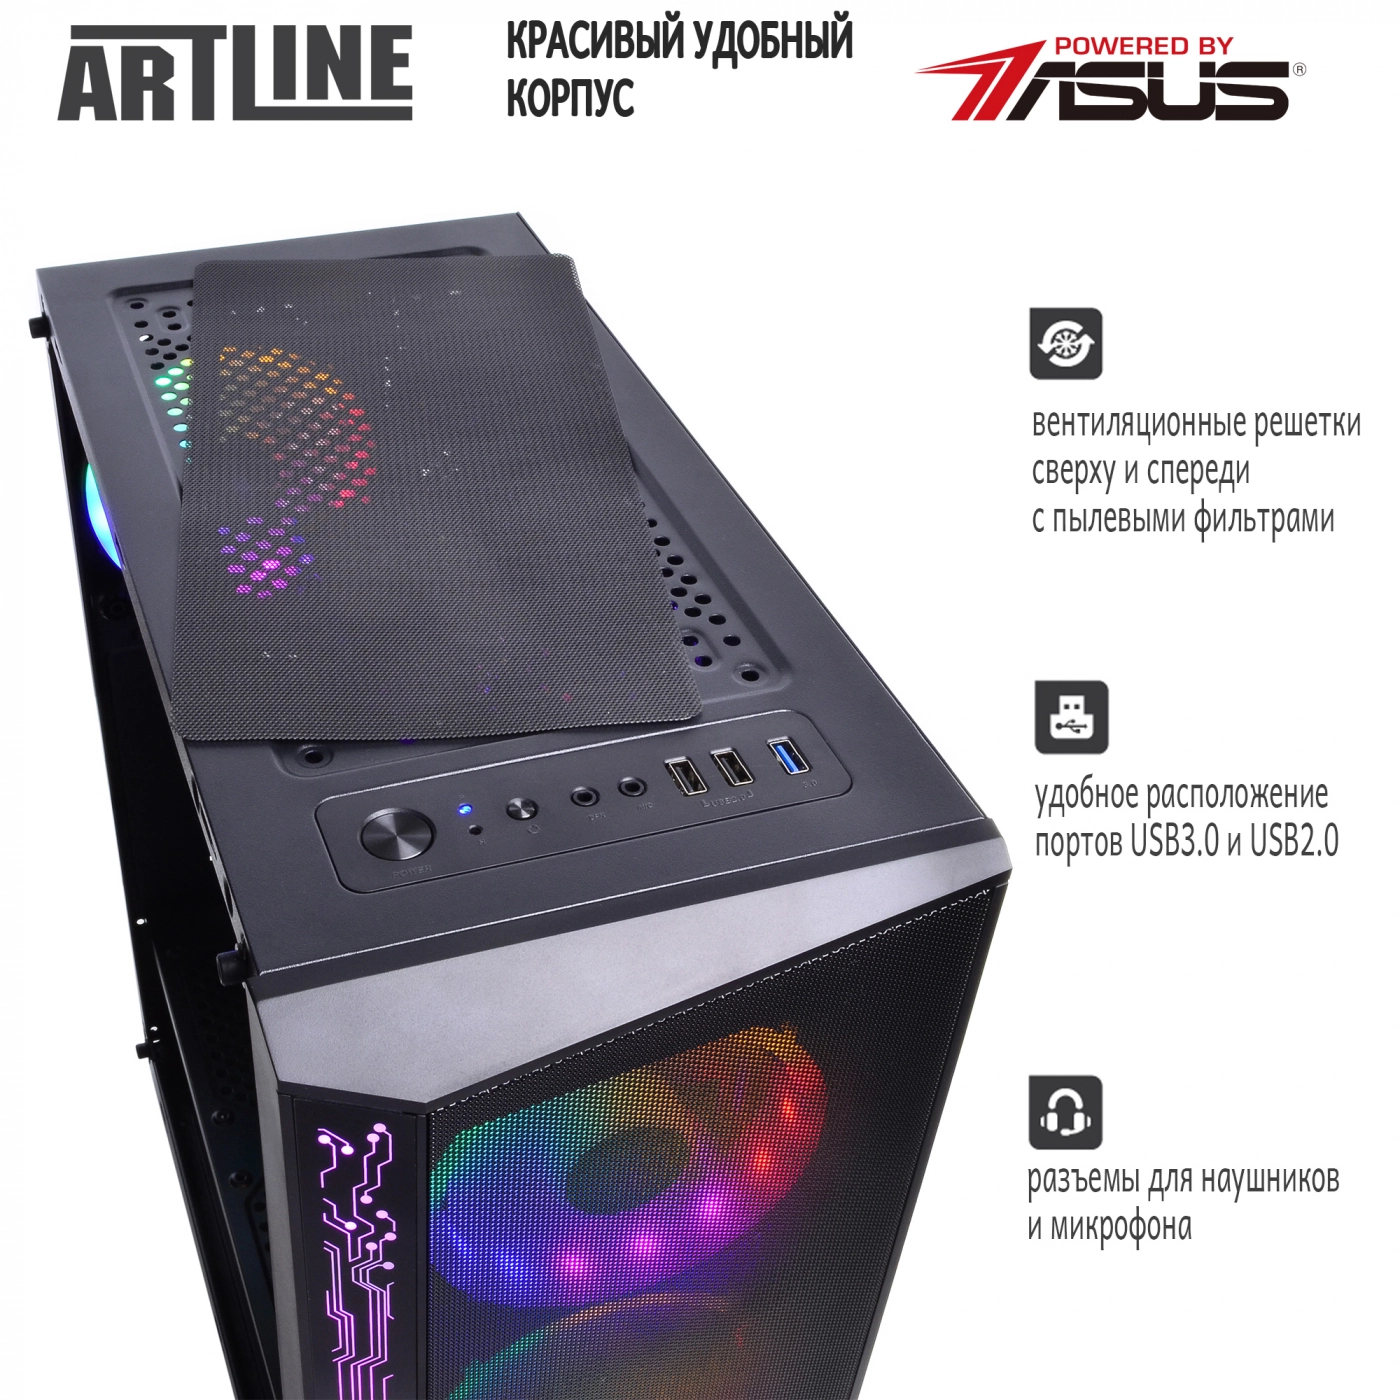 Купить Компьютер ARTLINE Gaming X73v20 - фото 4